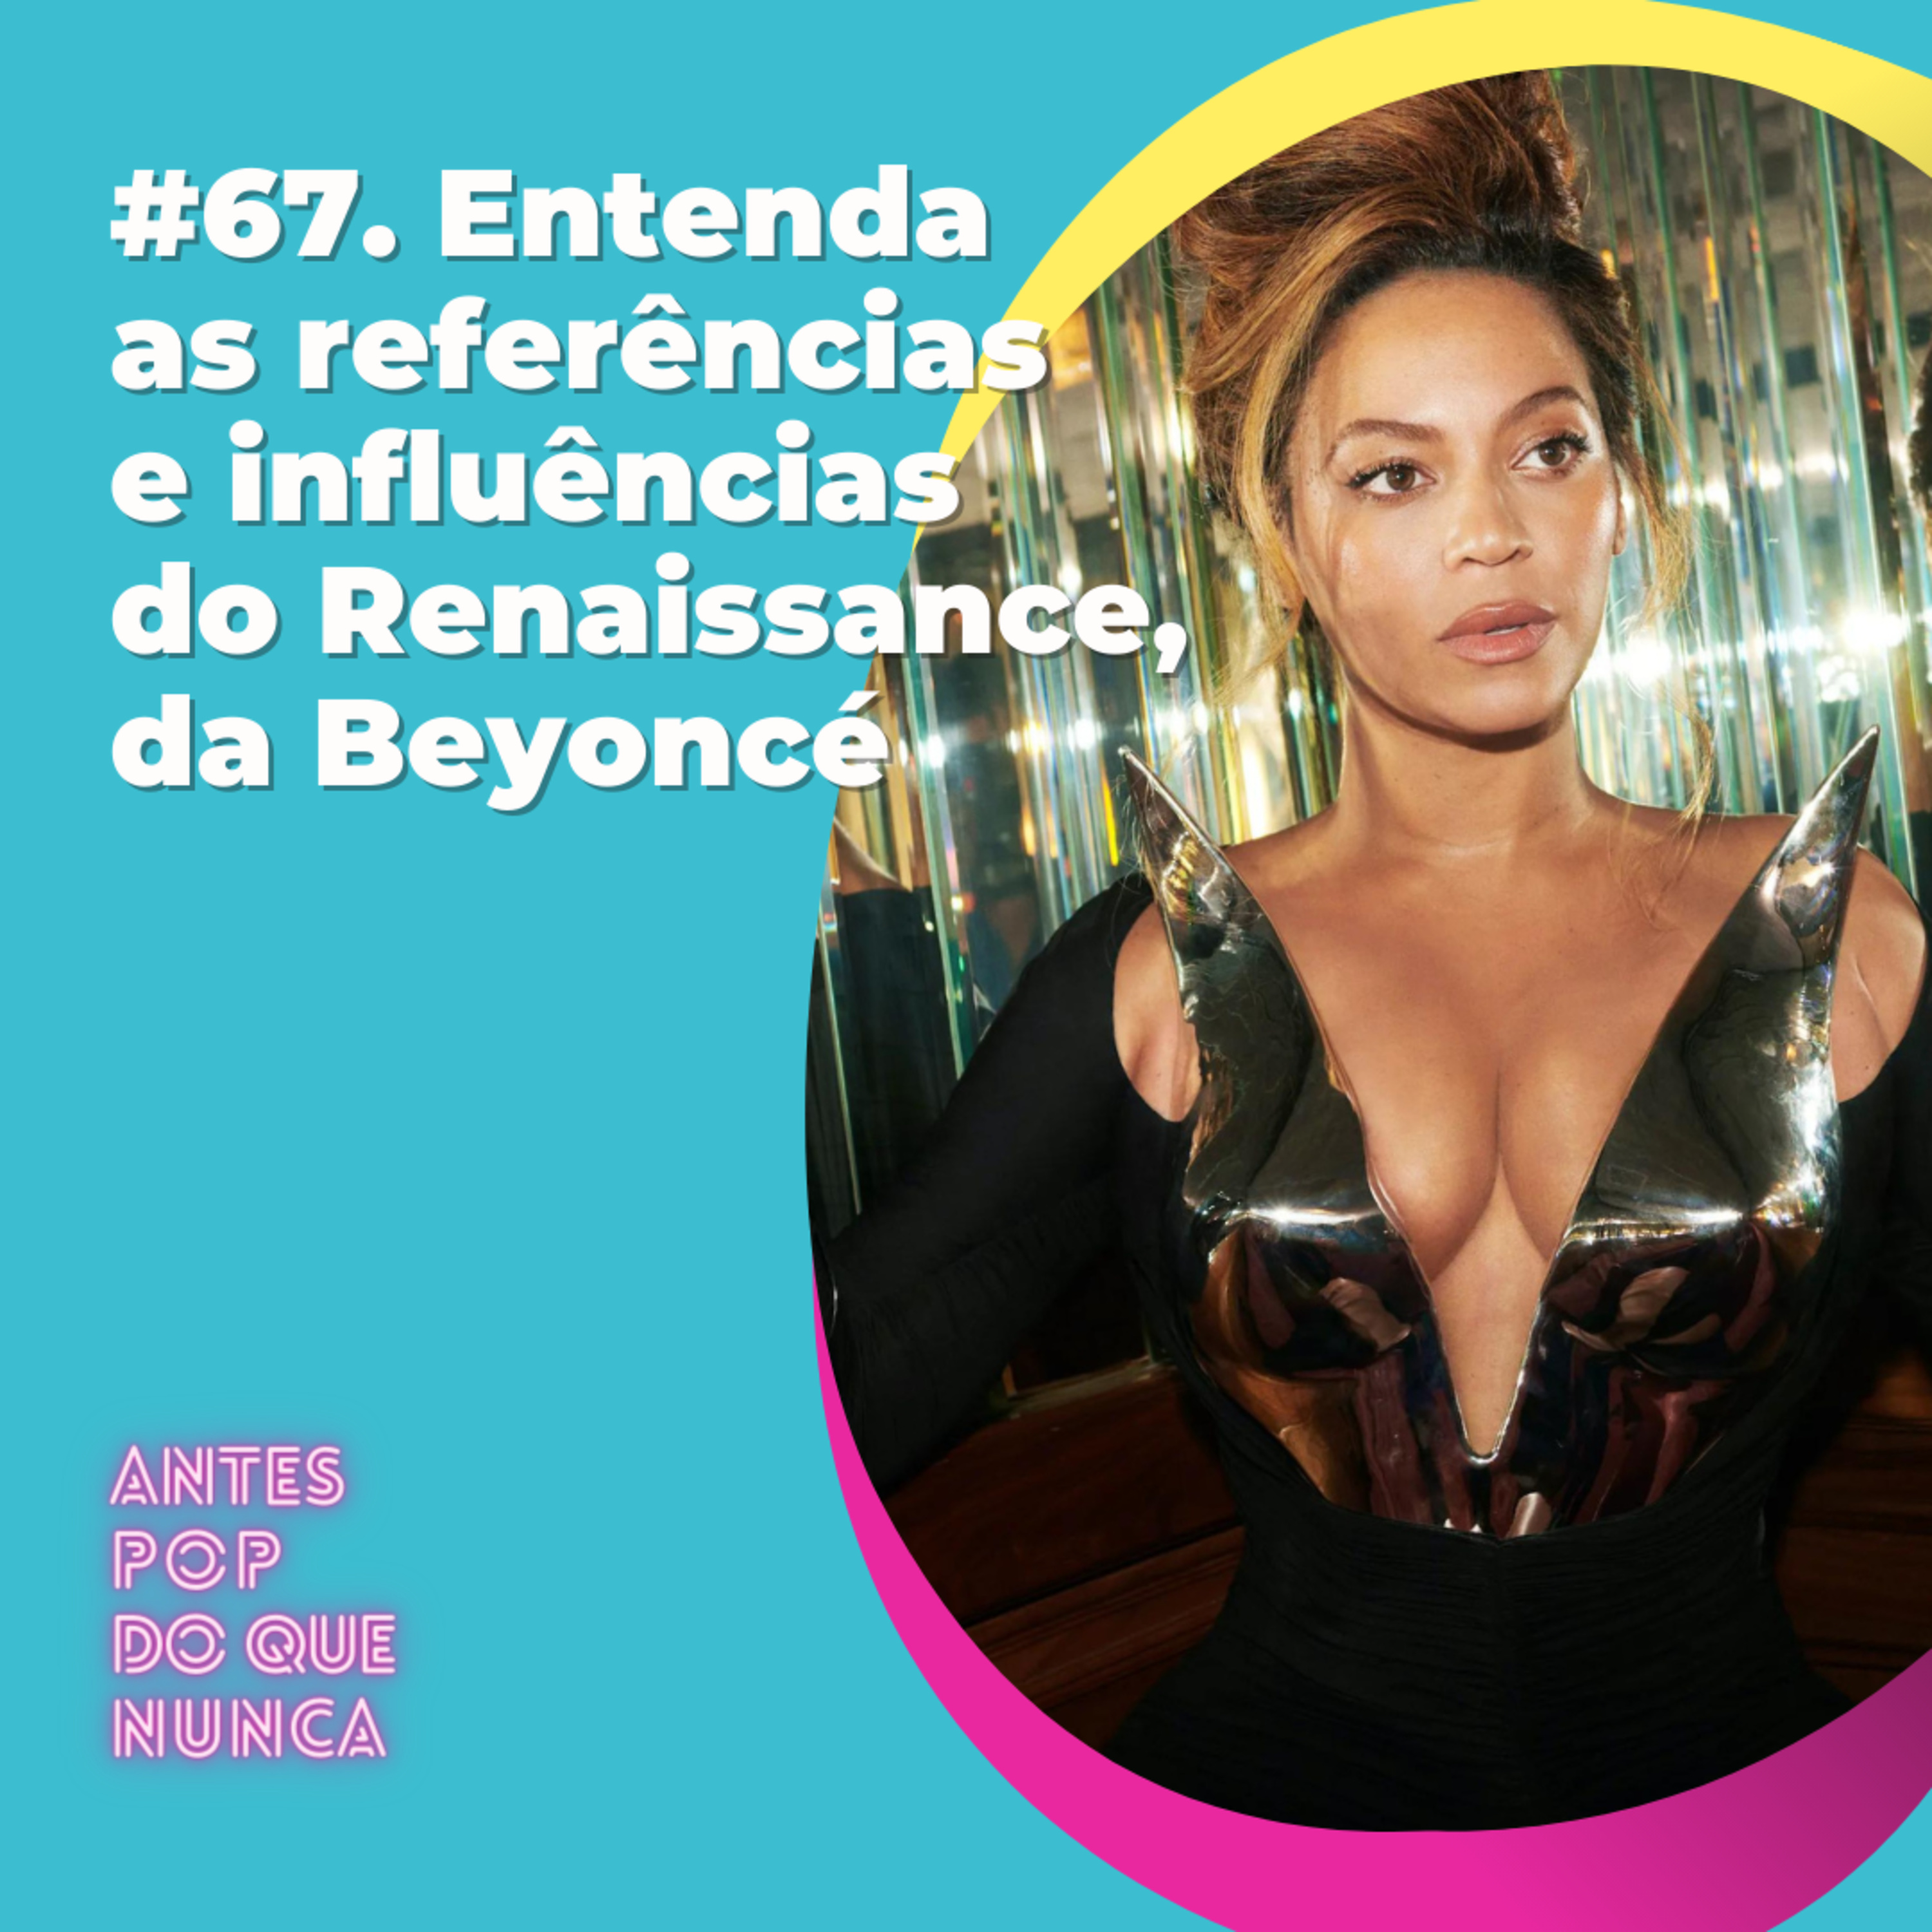 #67. Entenda as referências e influências do Renaissance, da Beyoncé